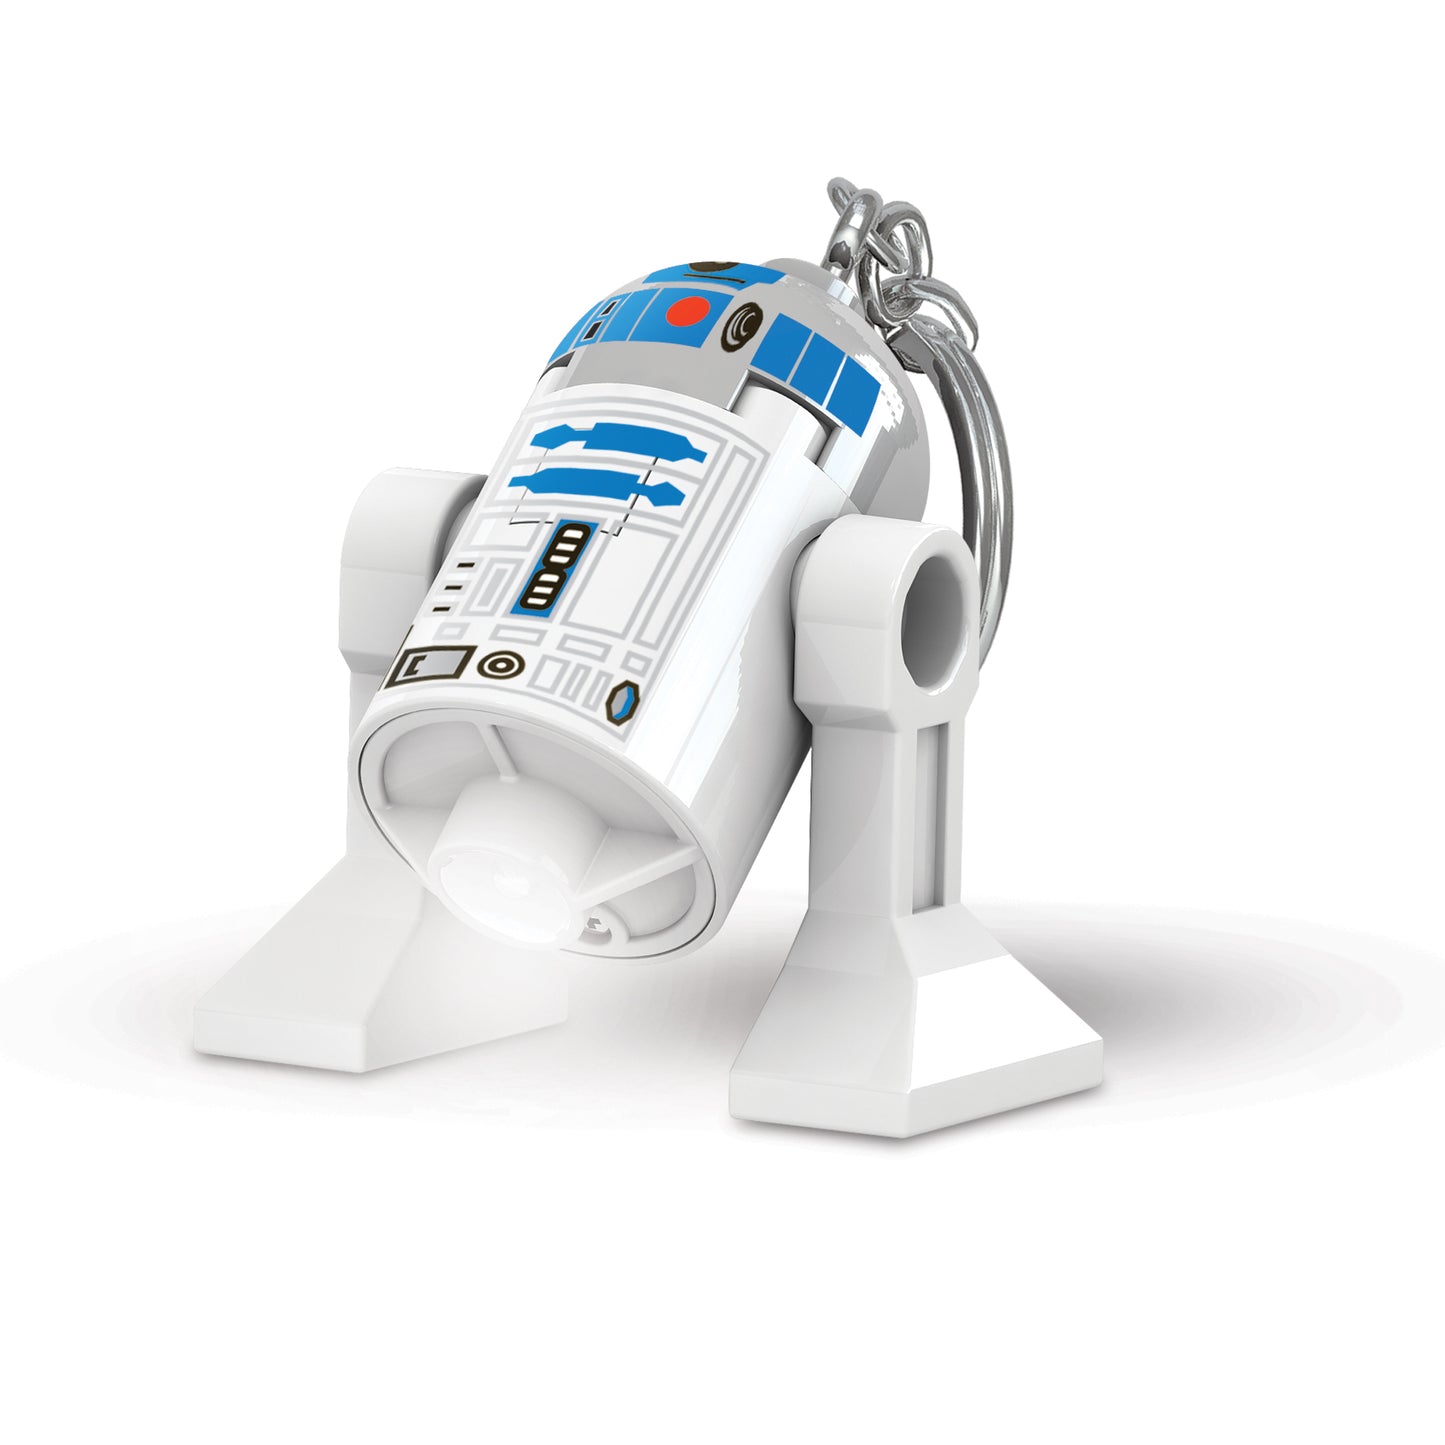 IQ 樂高 星際大戰系列 R2-D2機器人 LED發光鑰匙圈 (KE21)